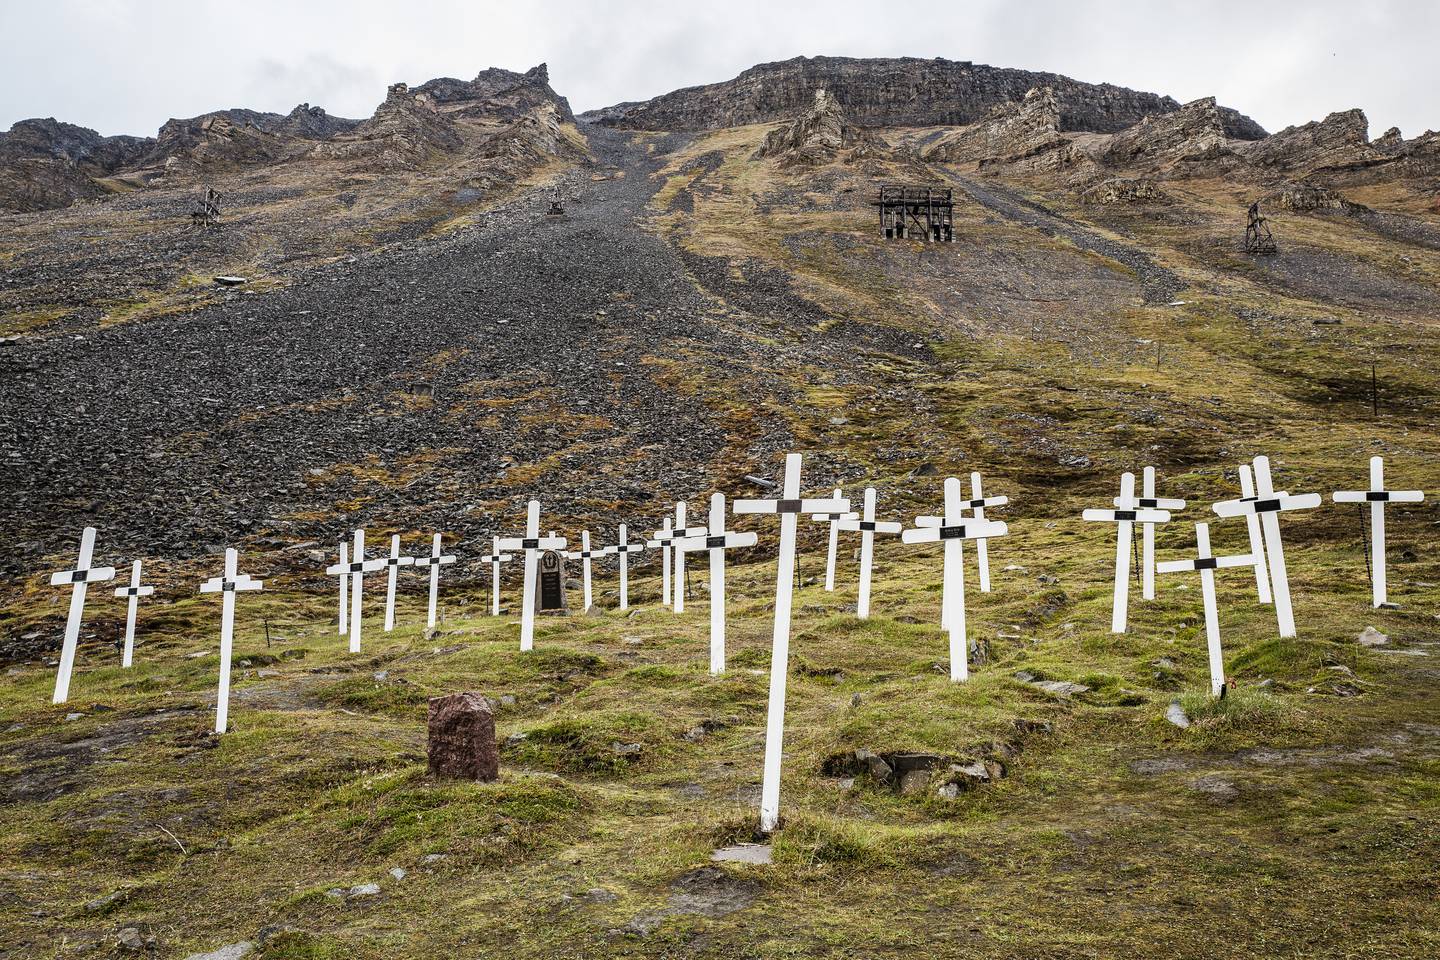 Idet Store Norske Kulkompani gjør seg klare til å feire 100 år, lager reiselivet på Svalbard museum av gruvene. Gravlund utenfor Longyearbyen. Kors